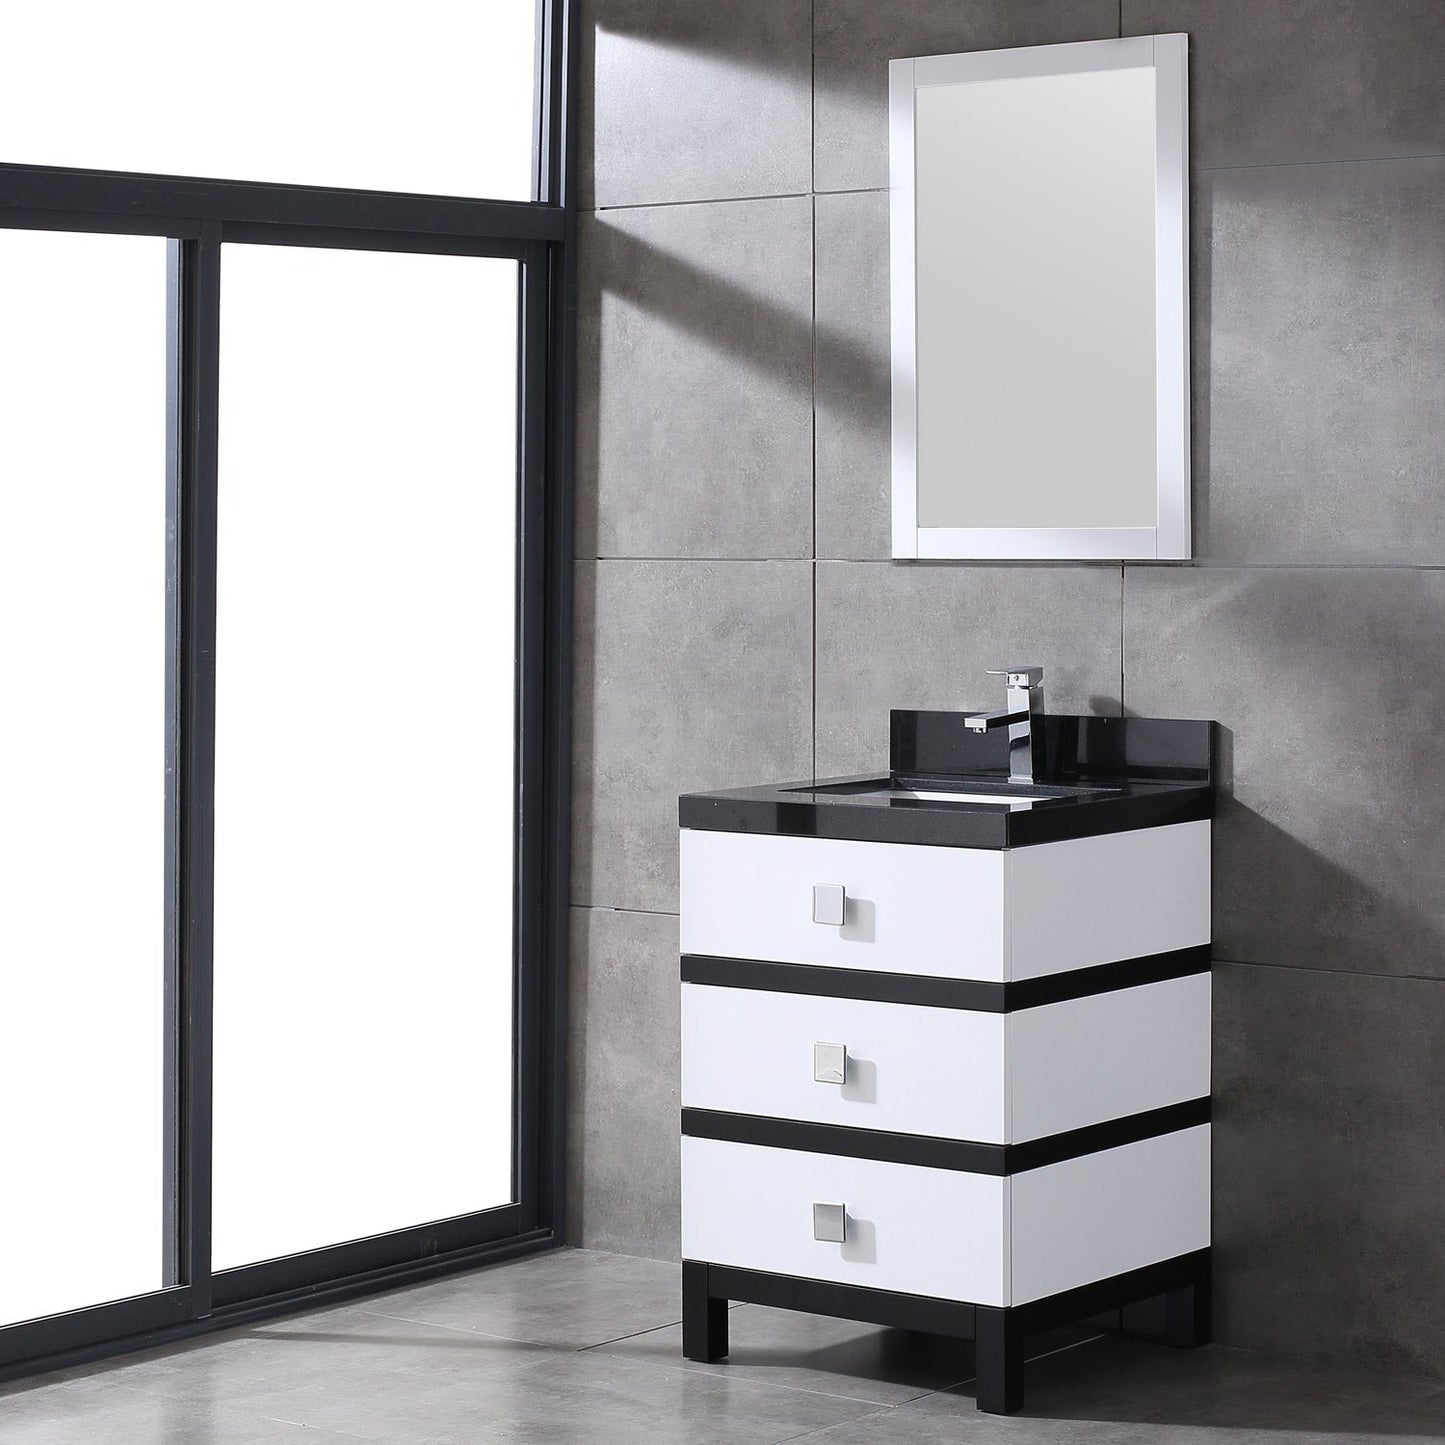 Eviva Sydney 24 Inch Bathroom Vanity with Solid Quartz Counter-top - Luxe Bathroom Vanities Luxury Bathroom Fixtures Bathroom Furniture